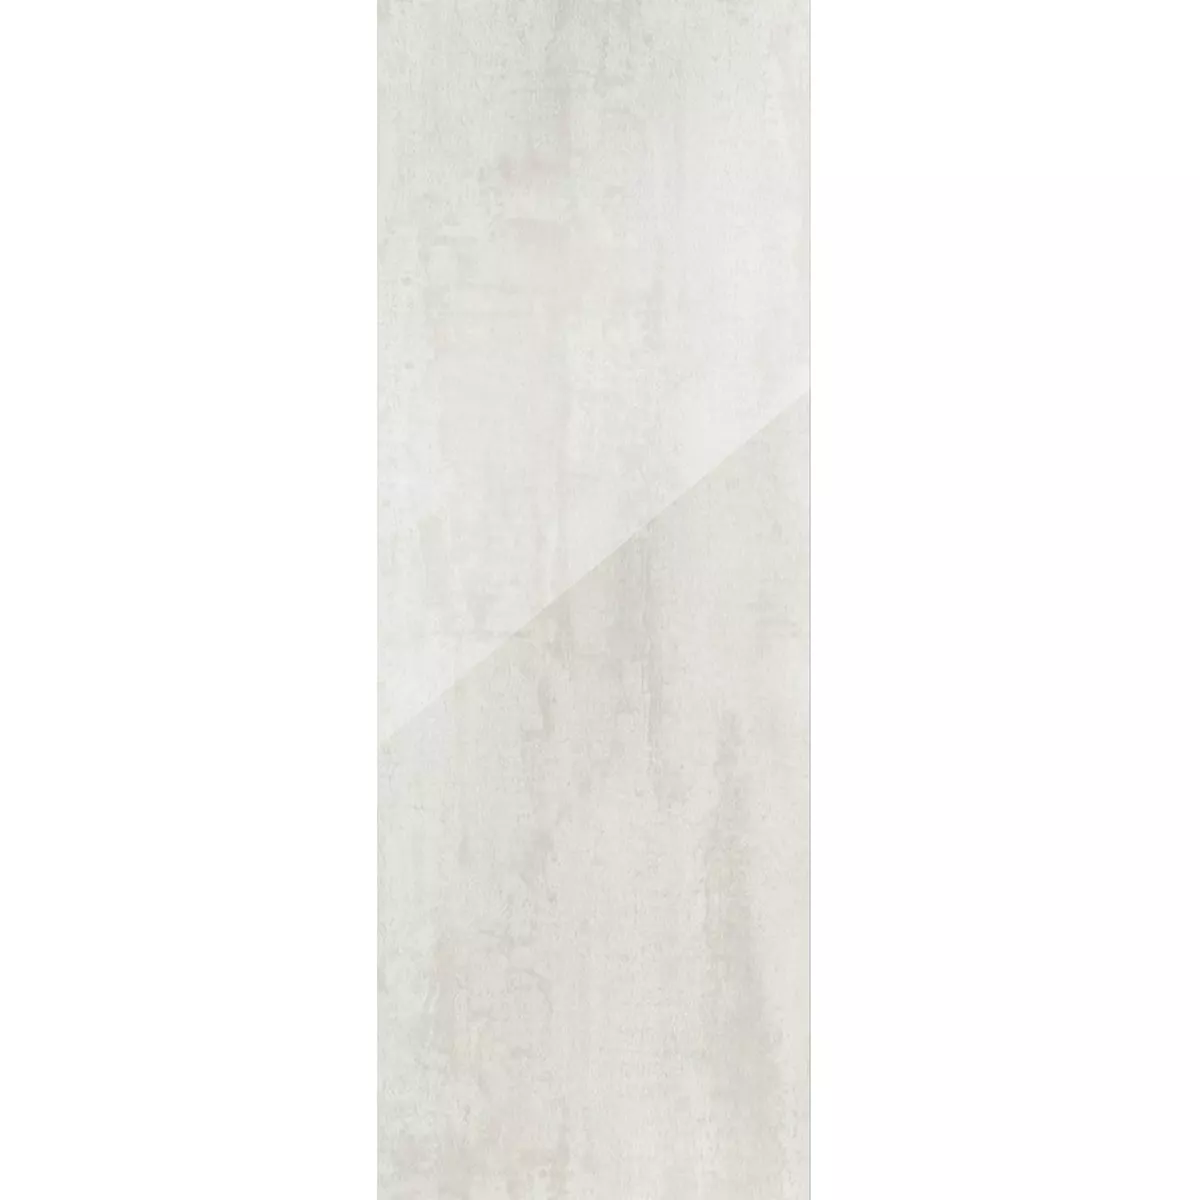 Плочки За Под Herion Метален Вид Lappato Blanco 45x90cm